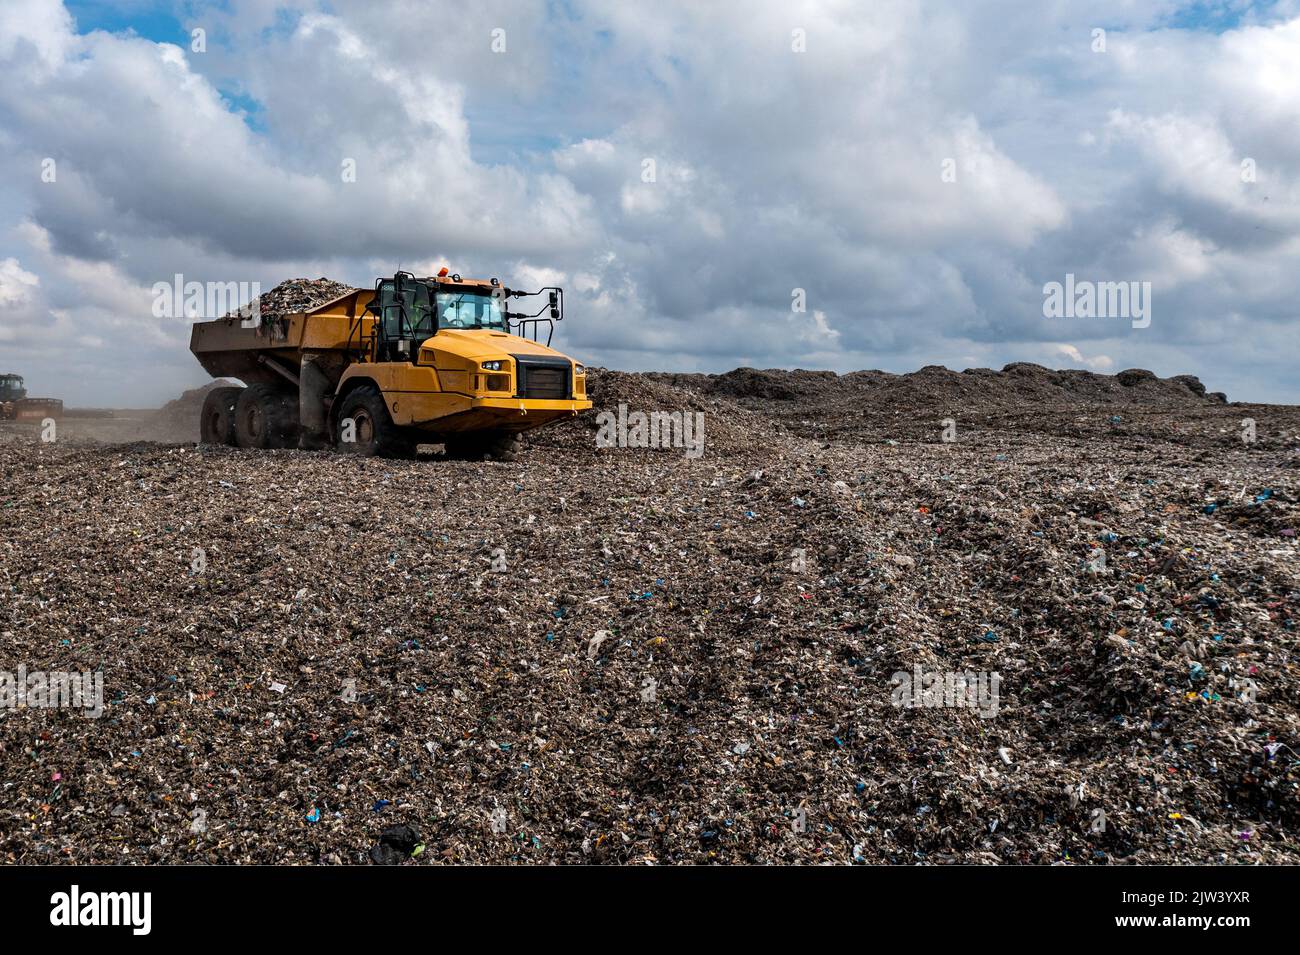 Un camion-benne sur un grand site d'enfouissement de gestion des déchets déverse des déchets dans une image de problème environnemental Banque D'Images